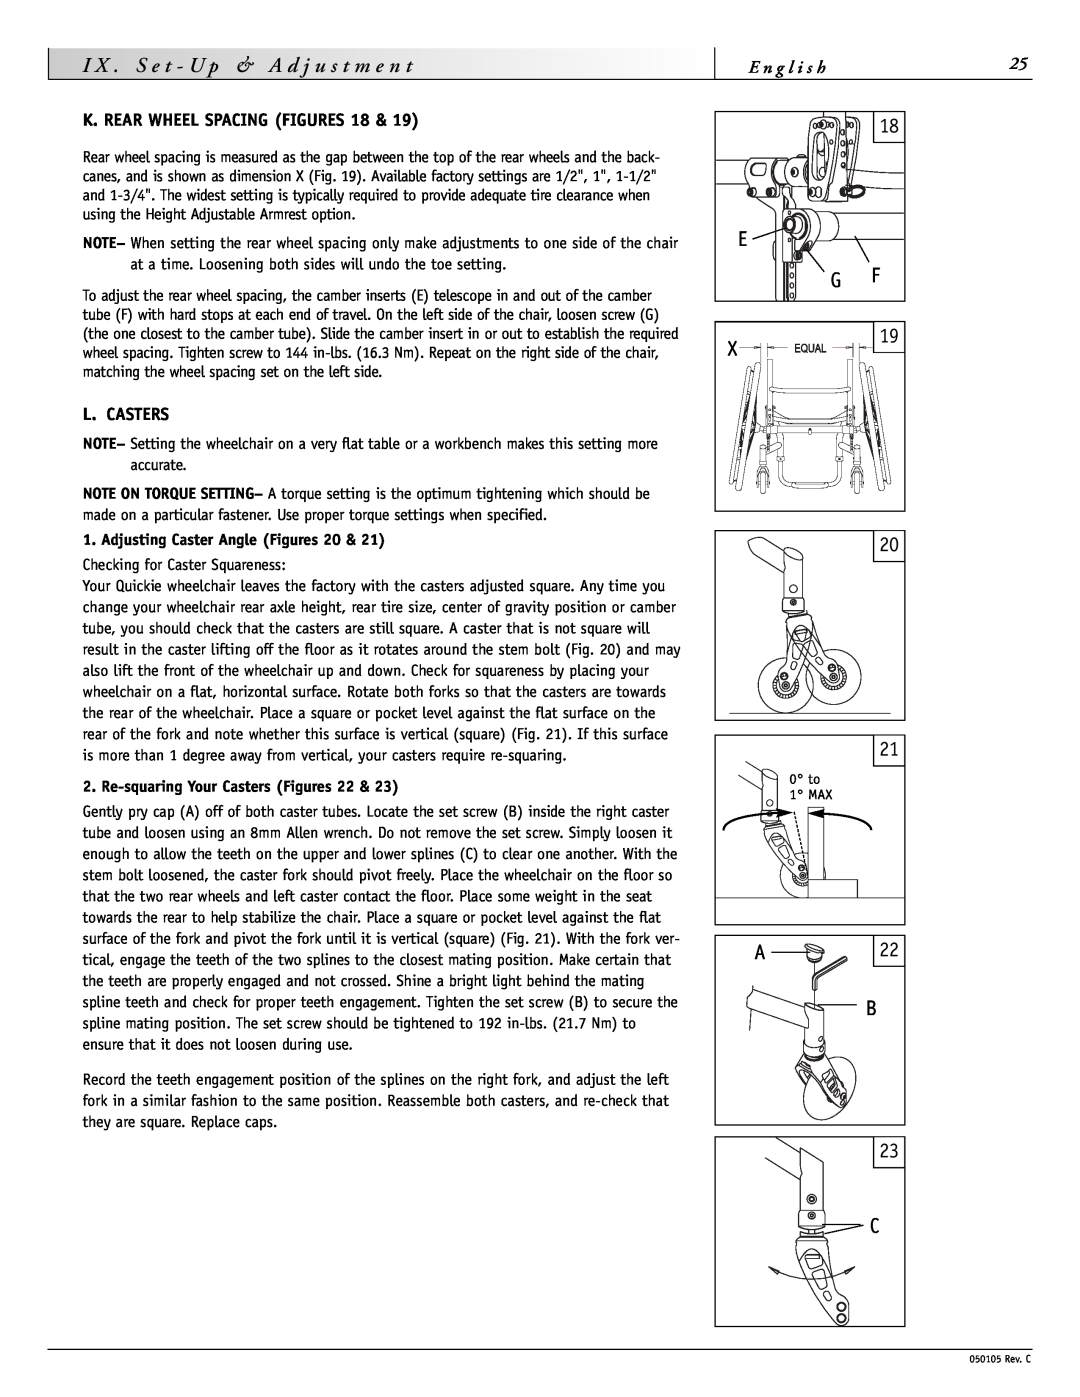 Sunrise Medical GT instruction manual K. REAR WHEEL SPACING FIGURES 18, L. Casters, Adjusting Caster Angle Figures 20 